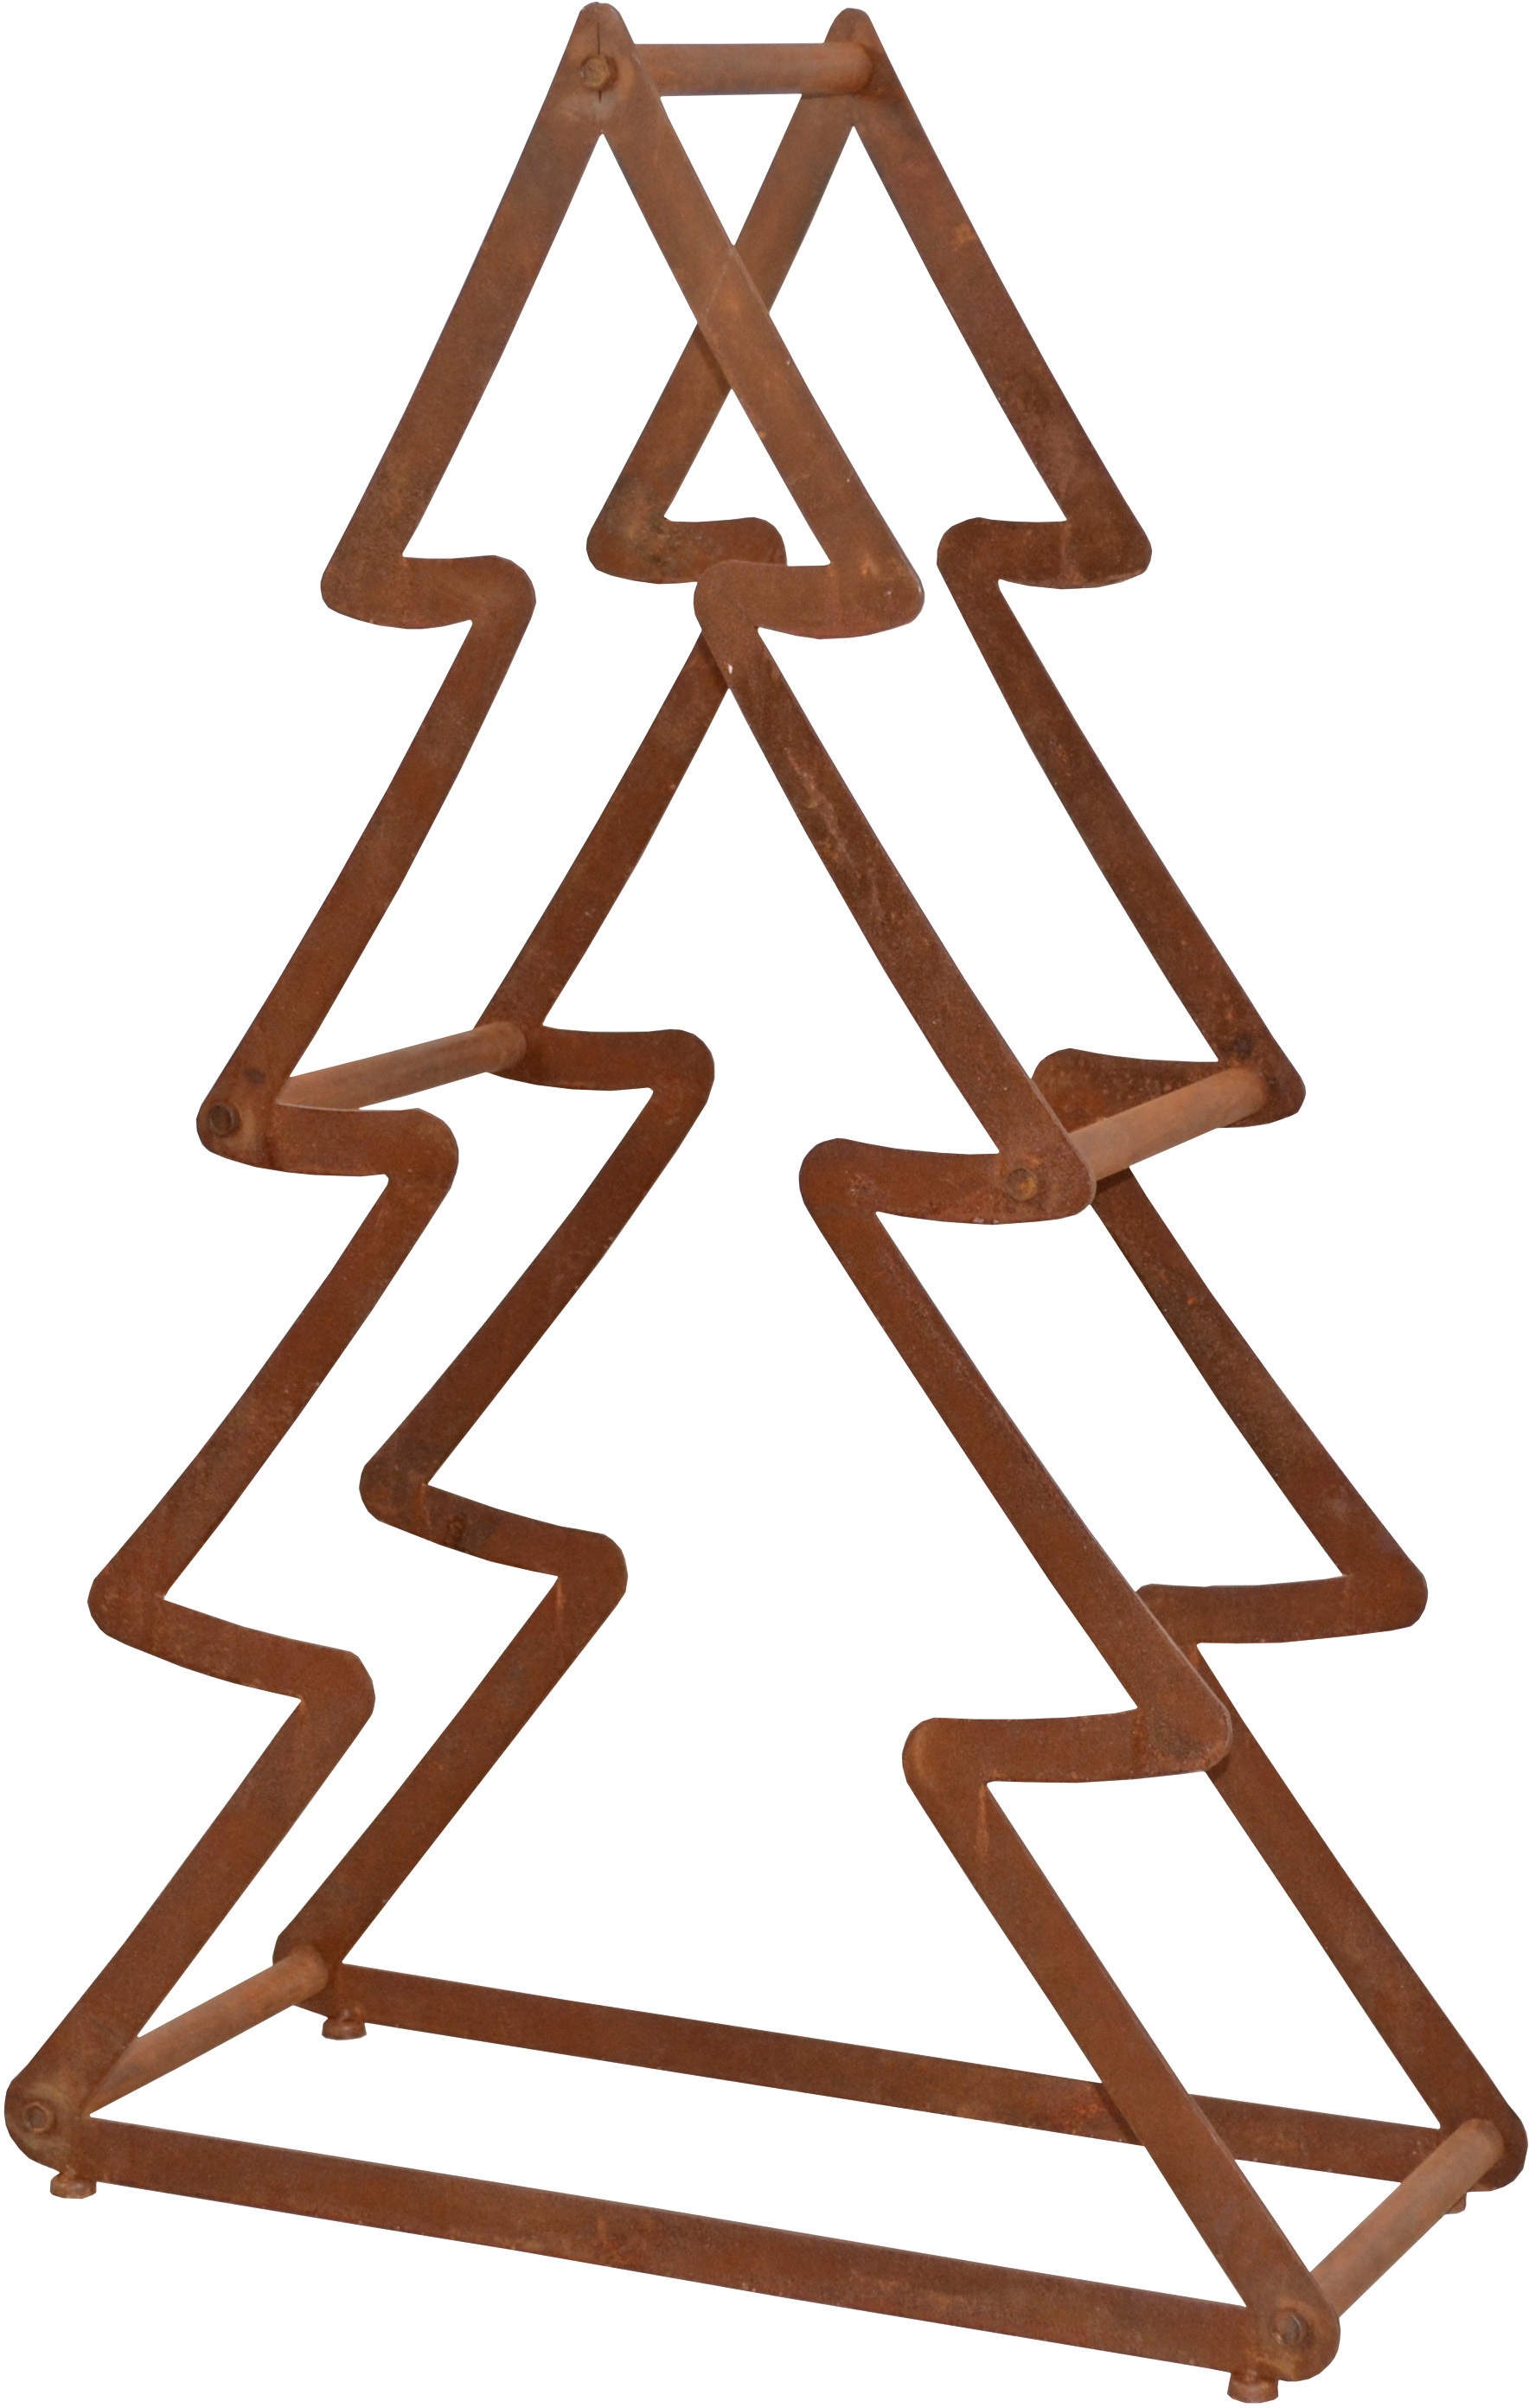 HOFMANN LIVING AND MORE Dekobaum »Weihnachtsbaum, Weihnachtsdeko aussen«, aus Metall, mit rostiger Oberfläche, Höhe ca. 95 cm